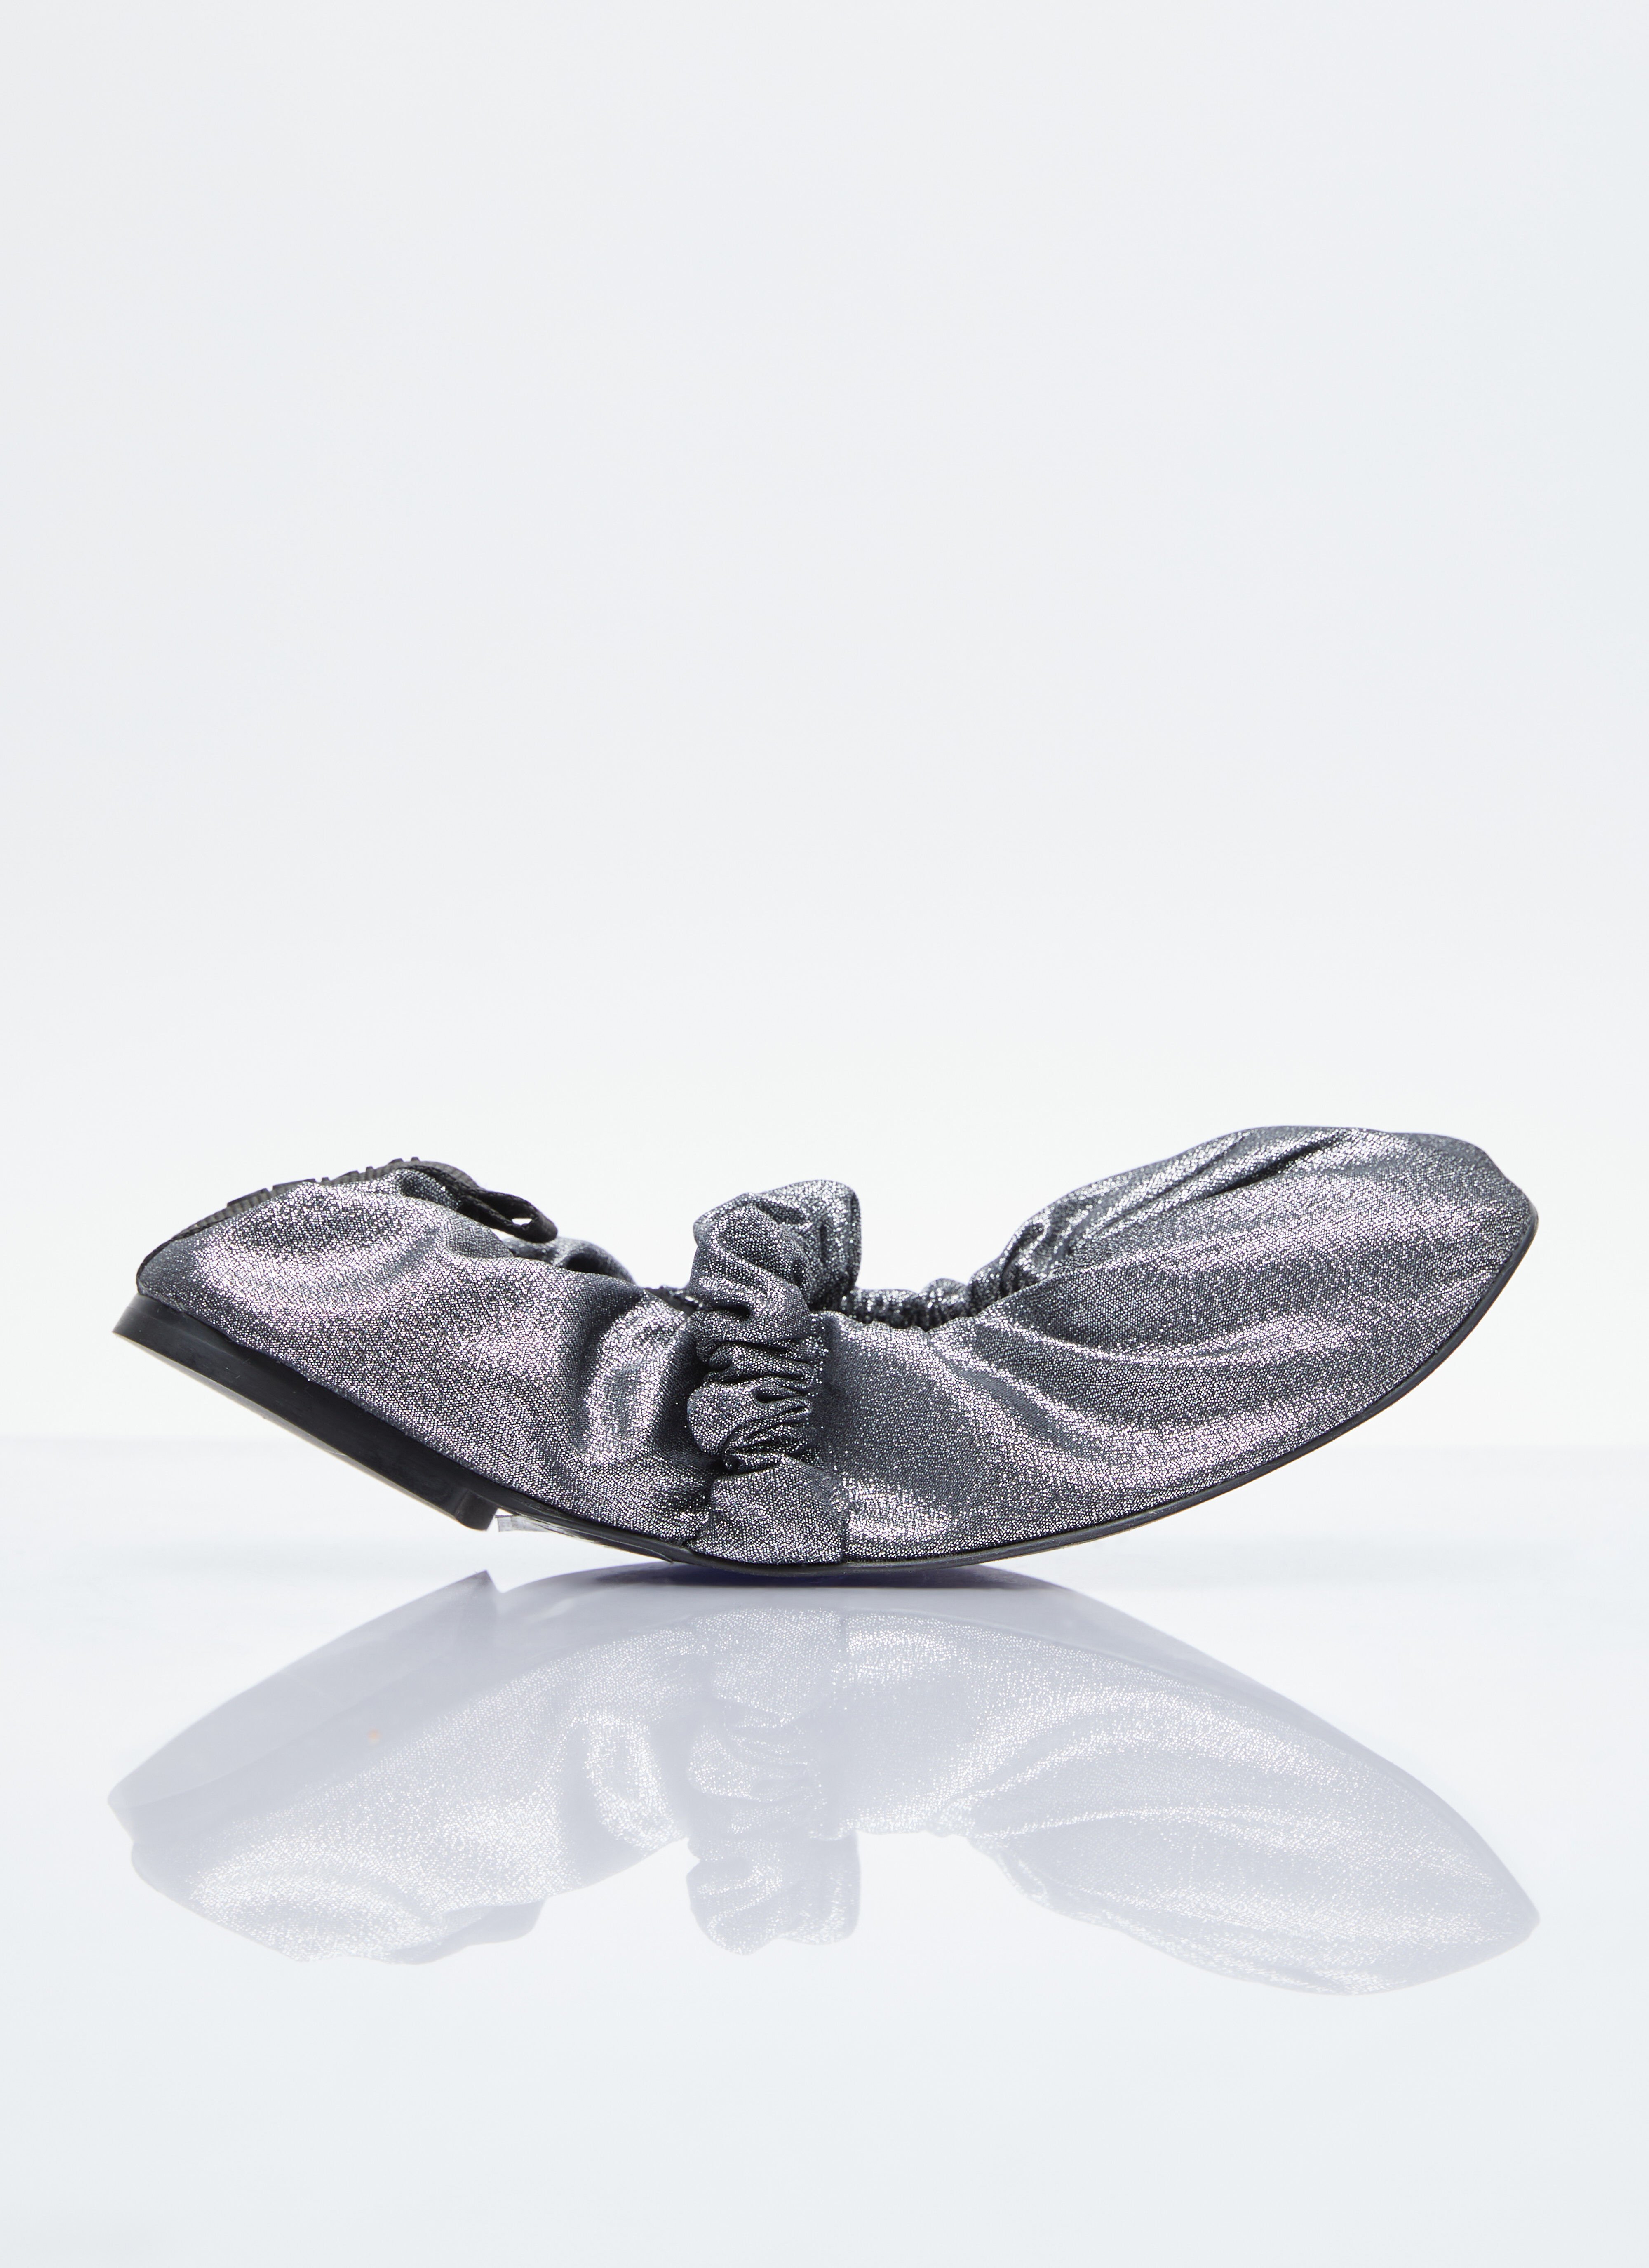 Coperni Scrunchie 芭蕾平底鞋 黑色 cpn0253019